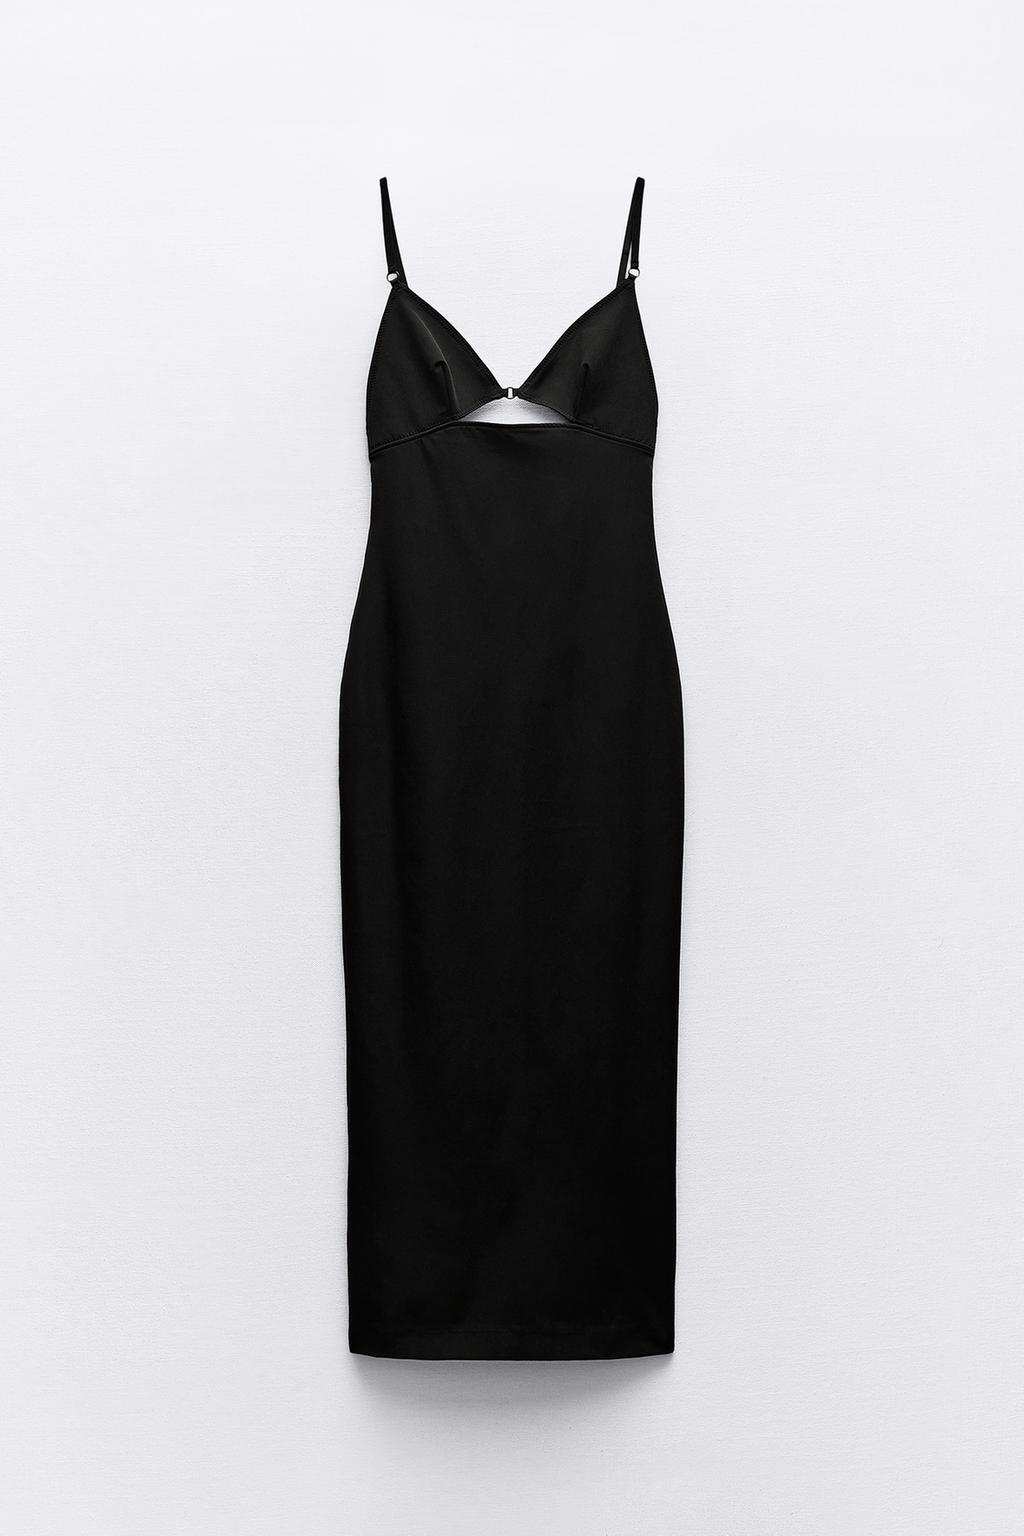 Vestido ela´stico cut out de Zara 12,99 euros